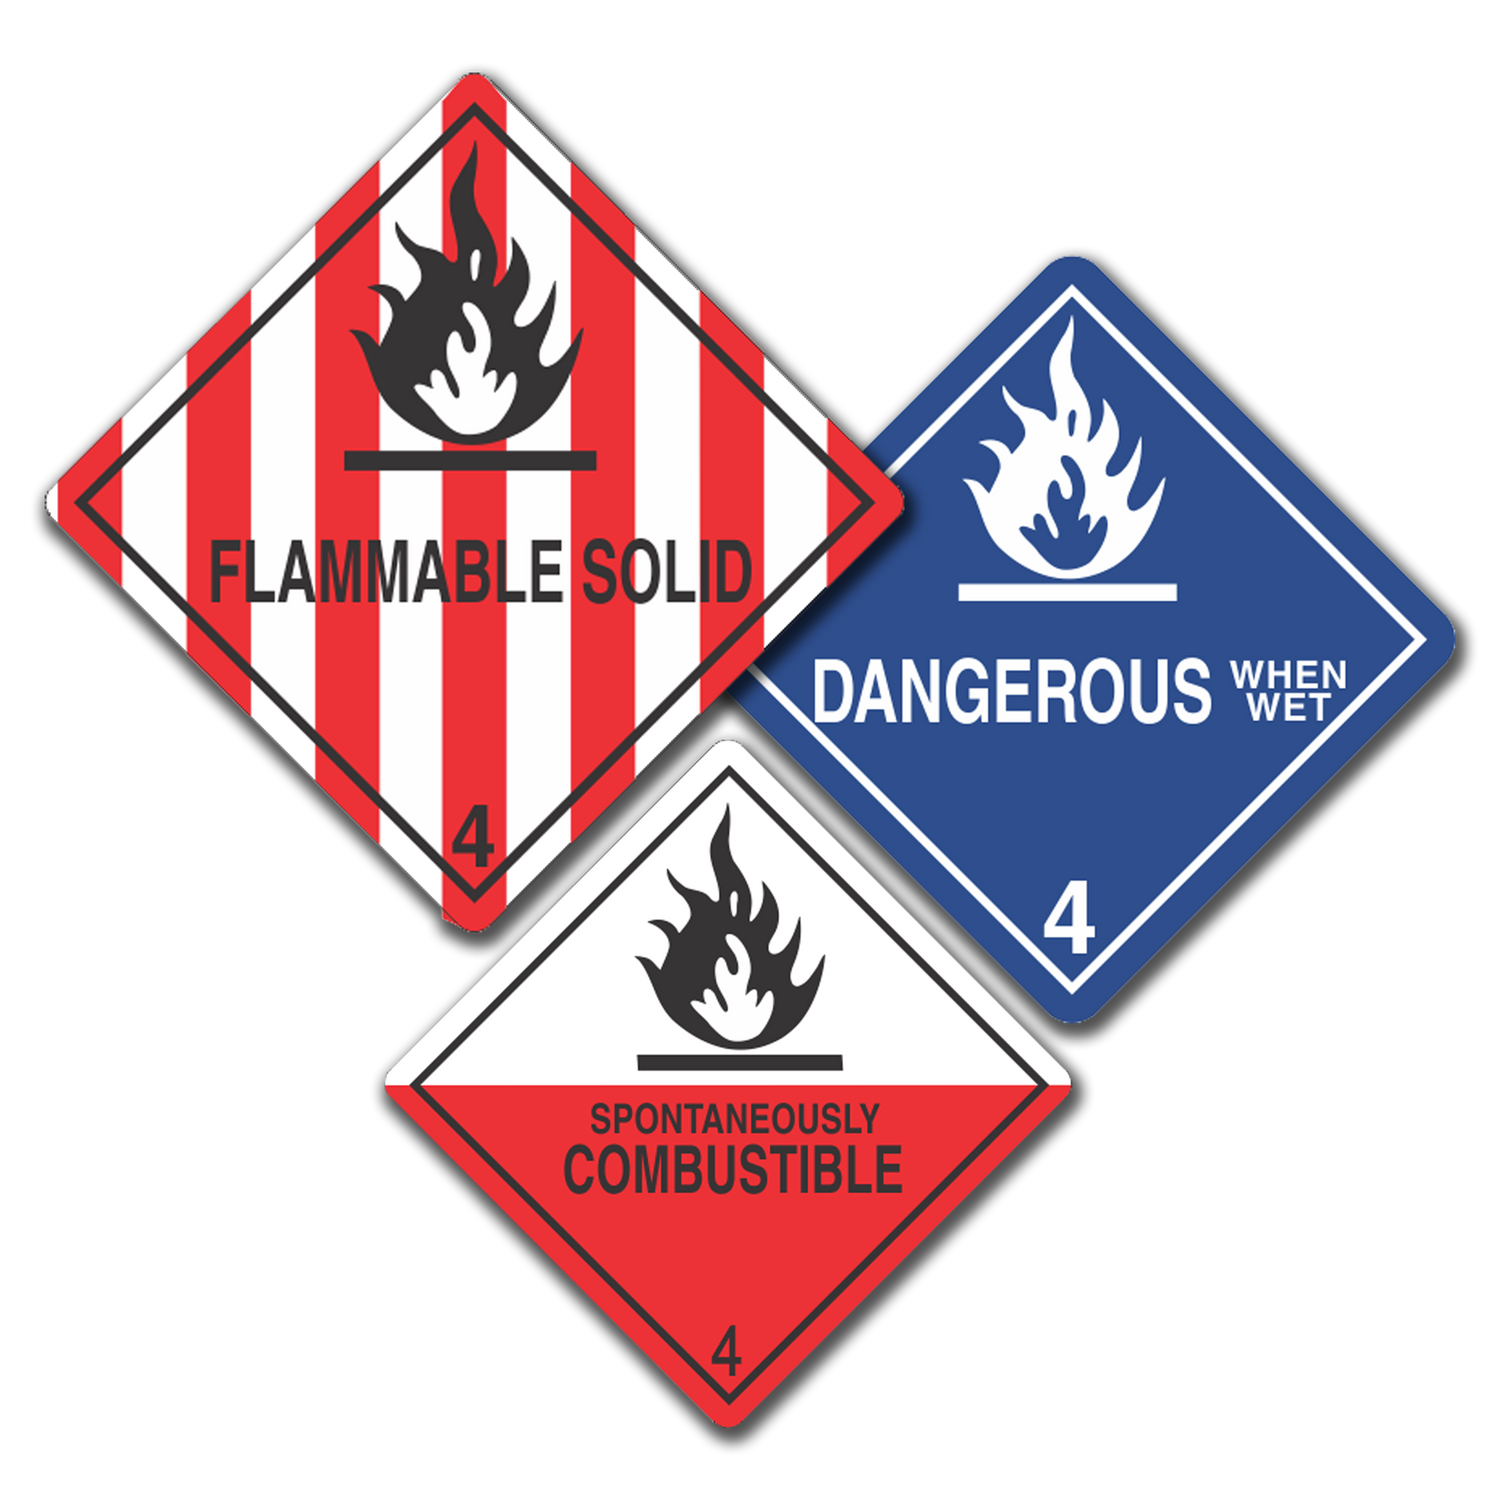 Class 4 - Flammable Solids, UN Dangerous Goods